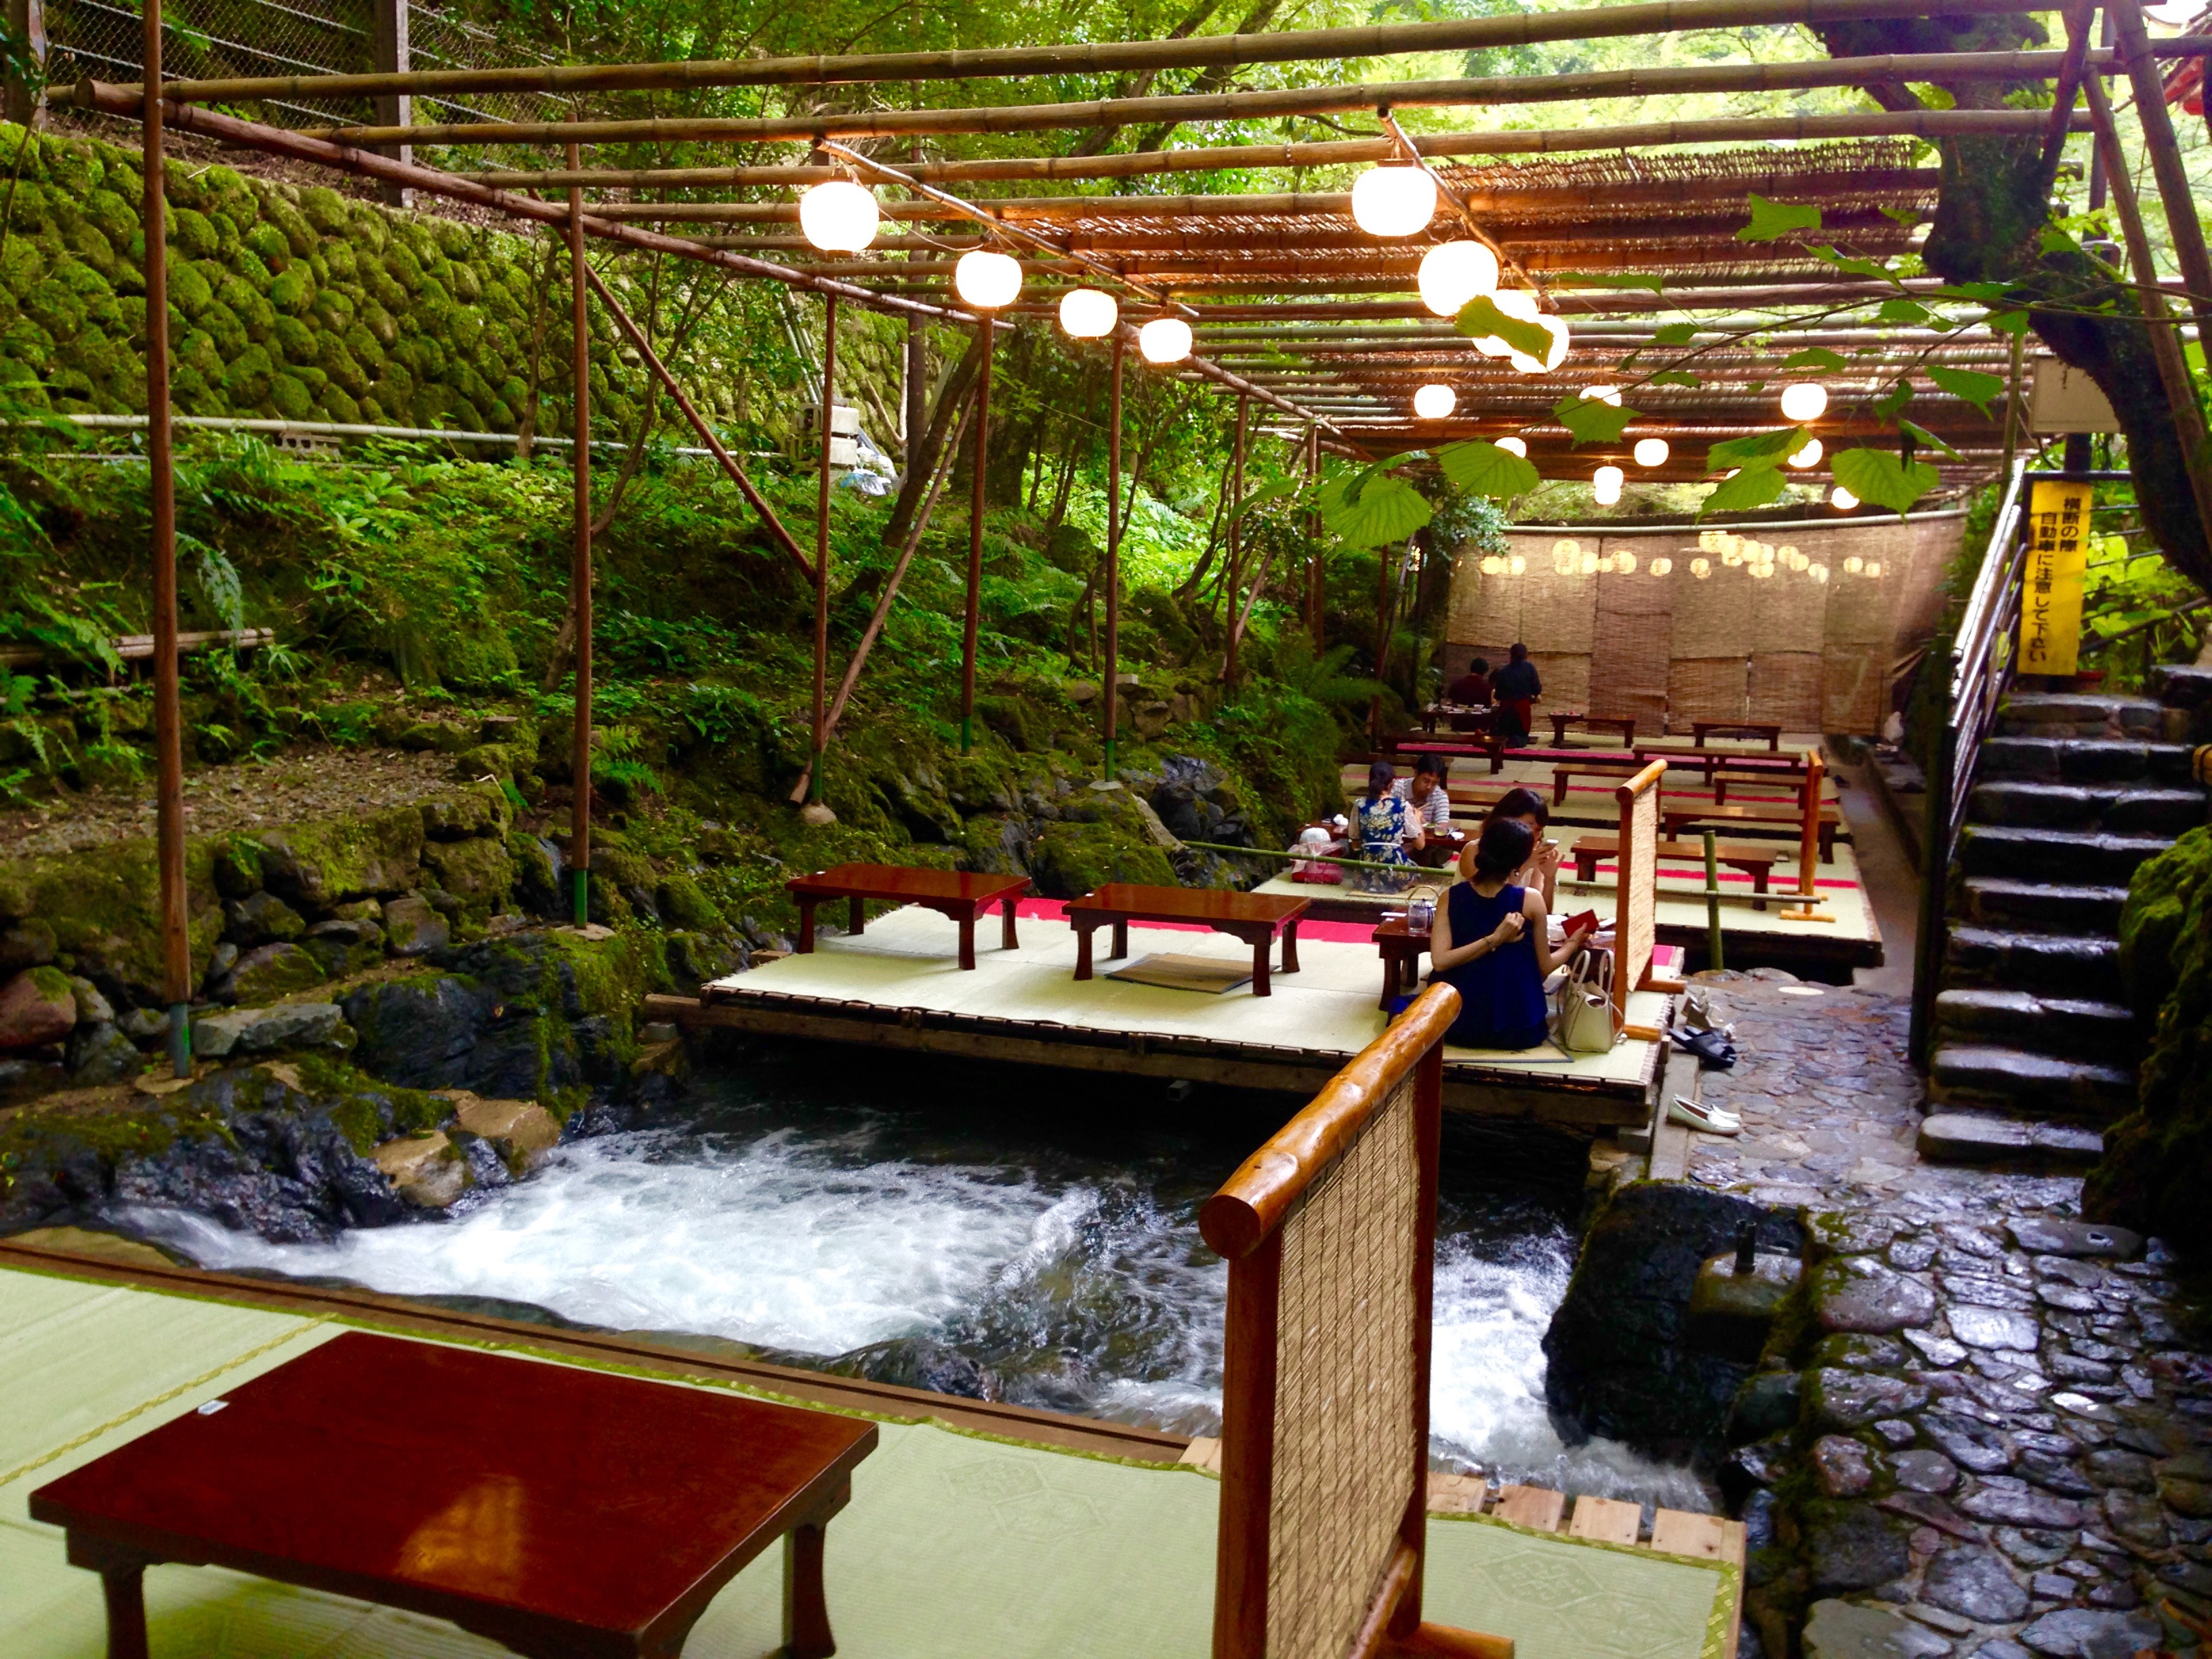 京都の夏の風物詩 川床料理 貴船 仲よし で涼しげランチ 1 京都観光とグルメのブログ